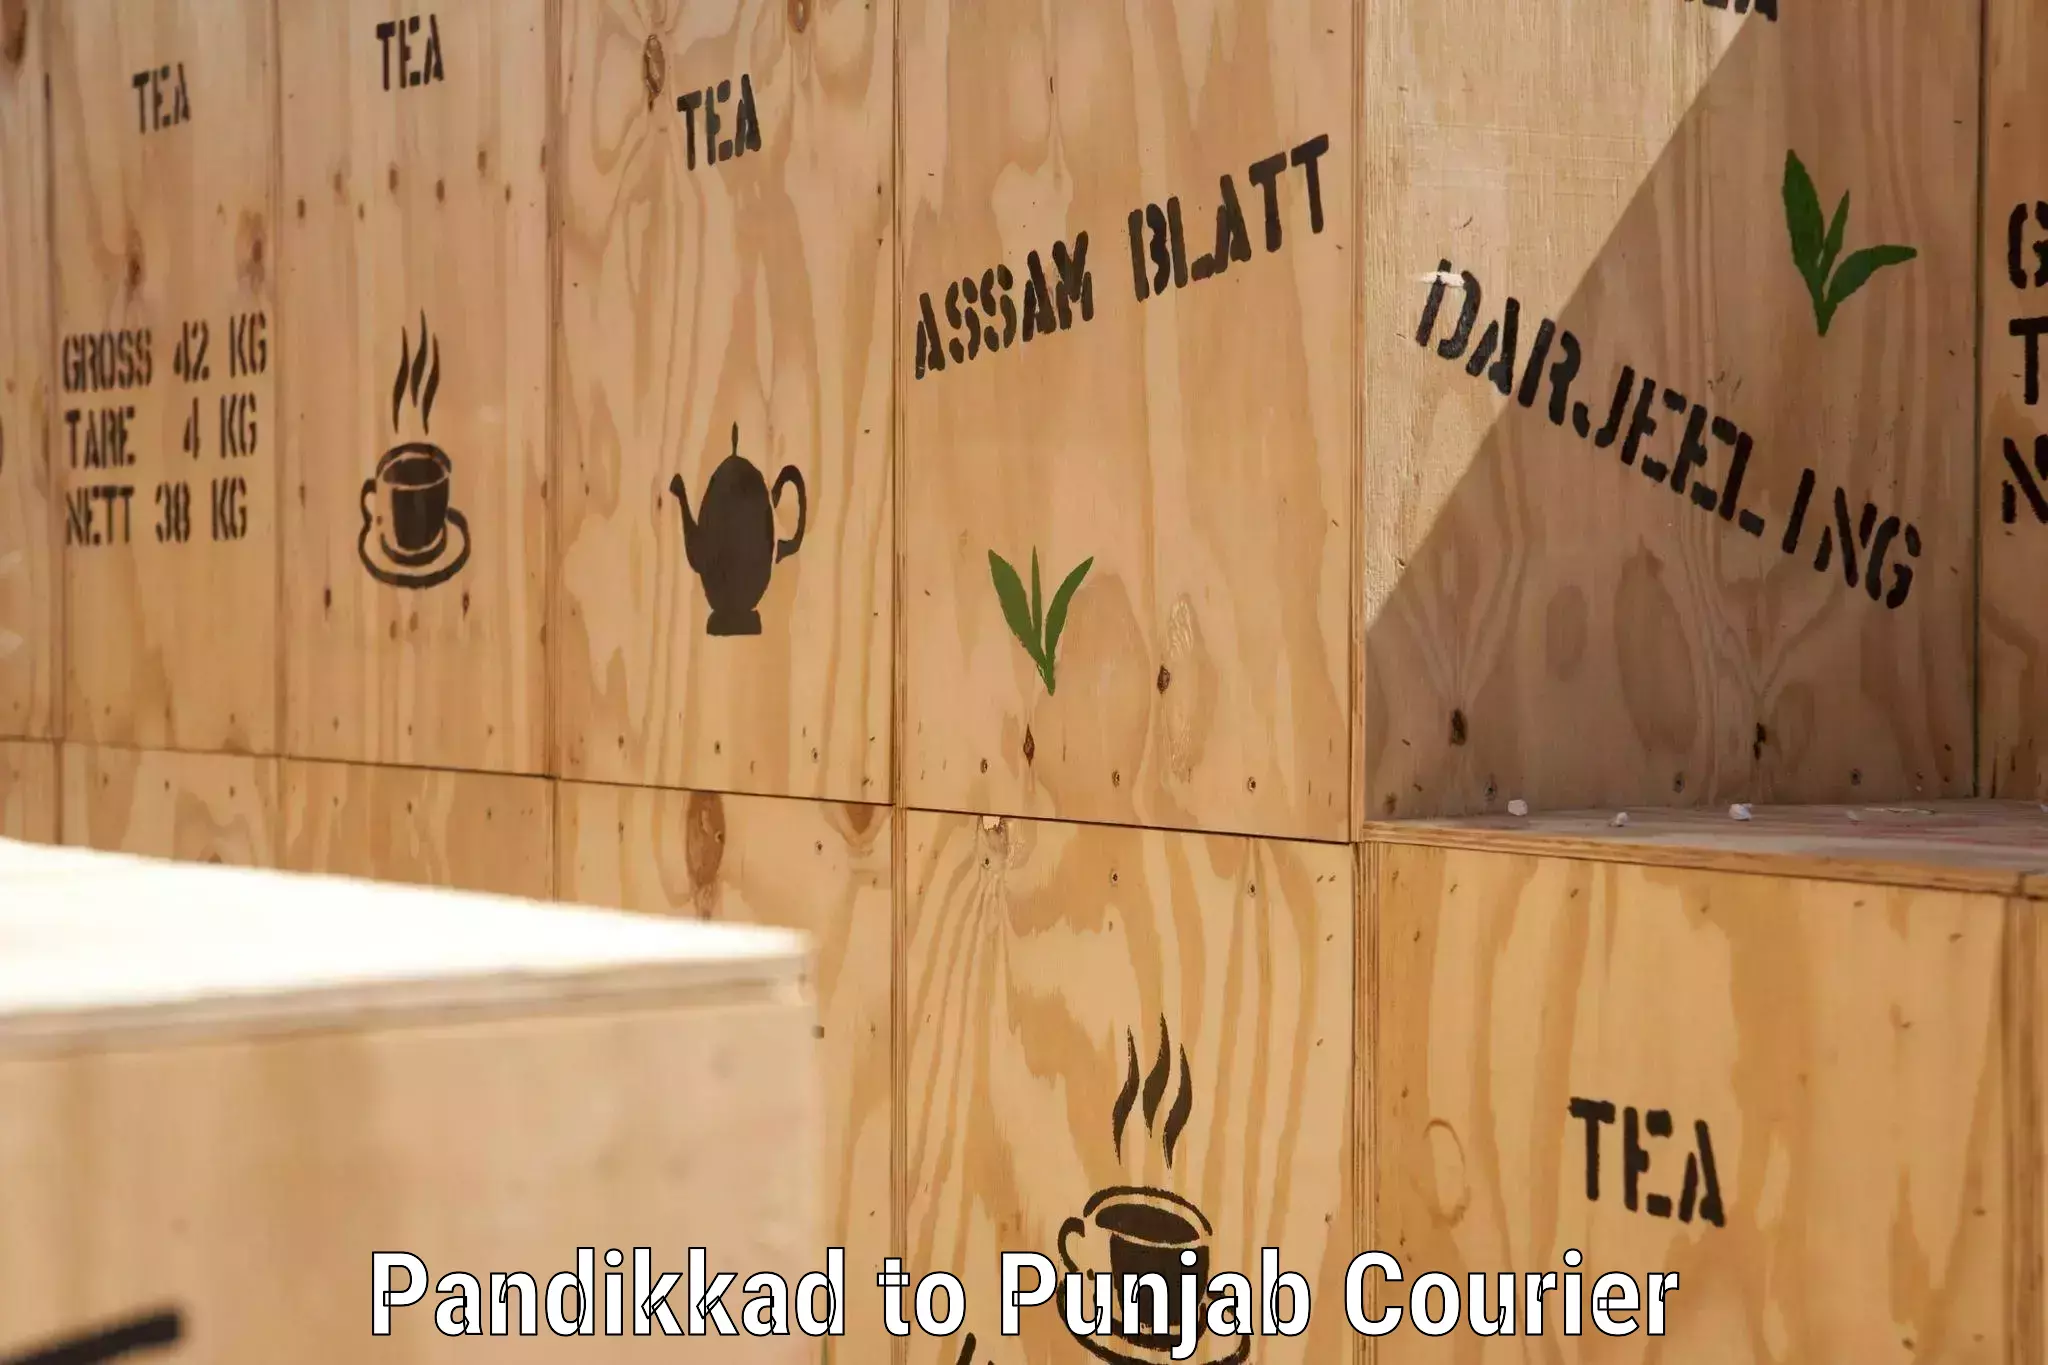 Global logistics network Pandikkad to Nawanshahr